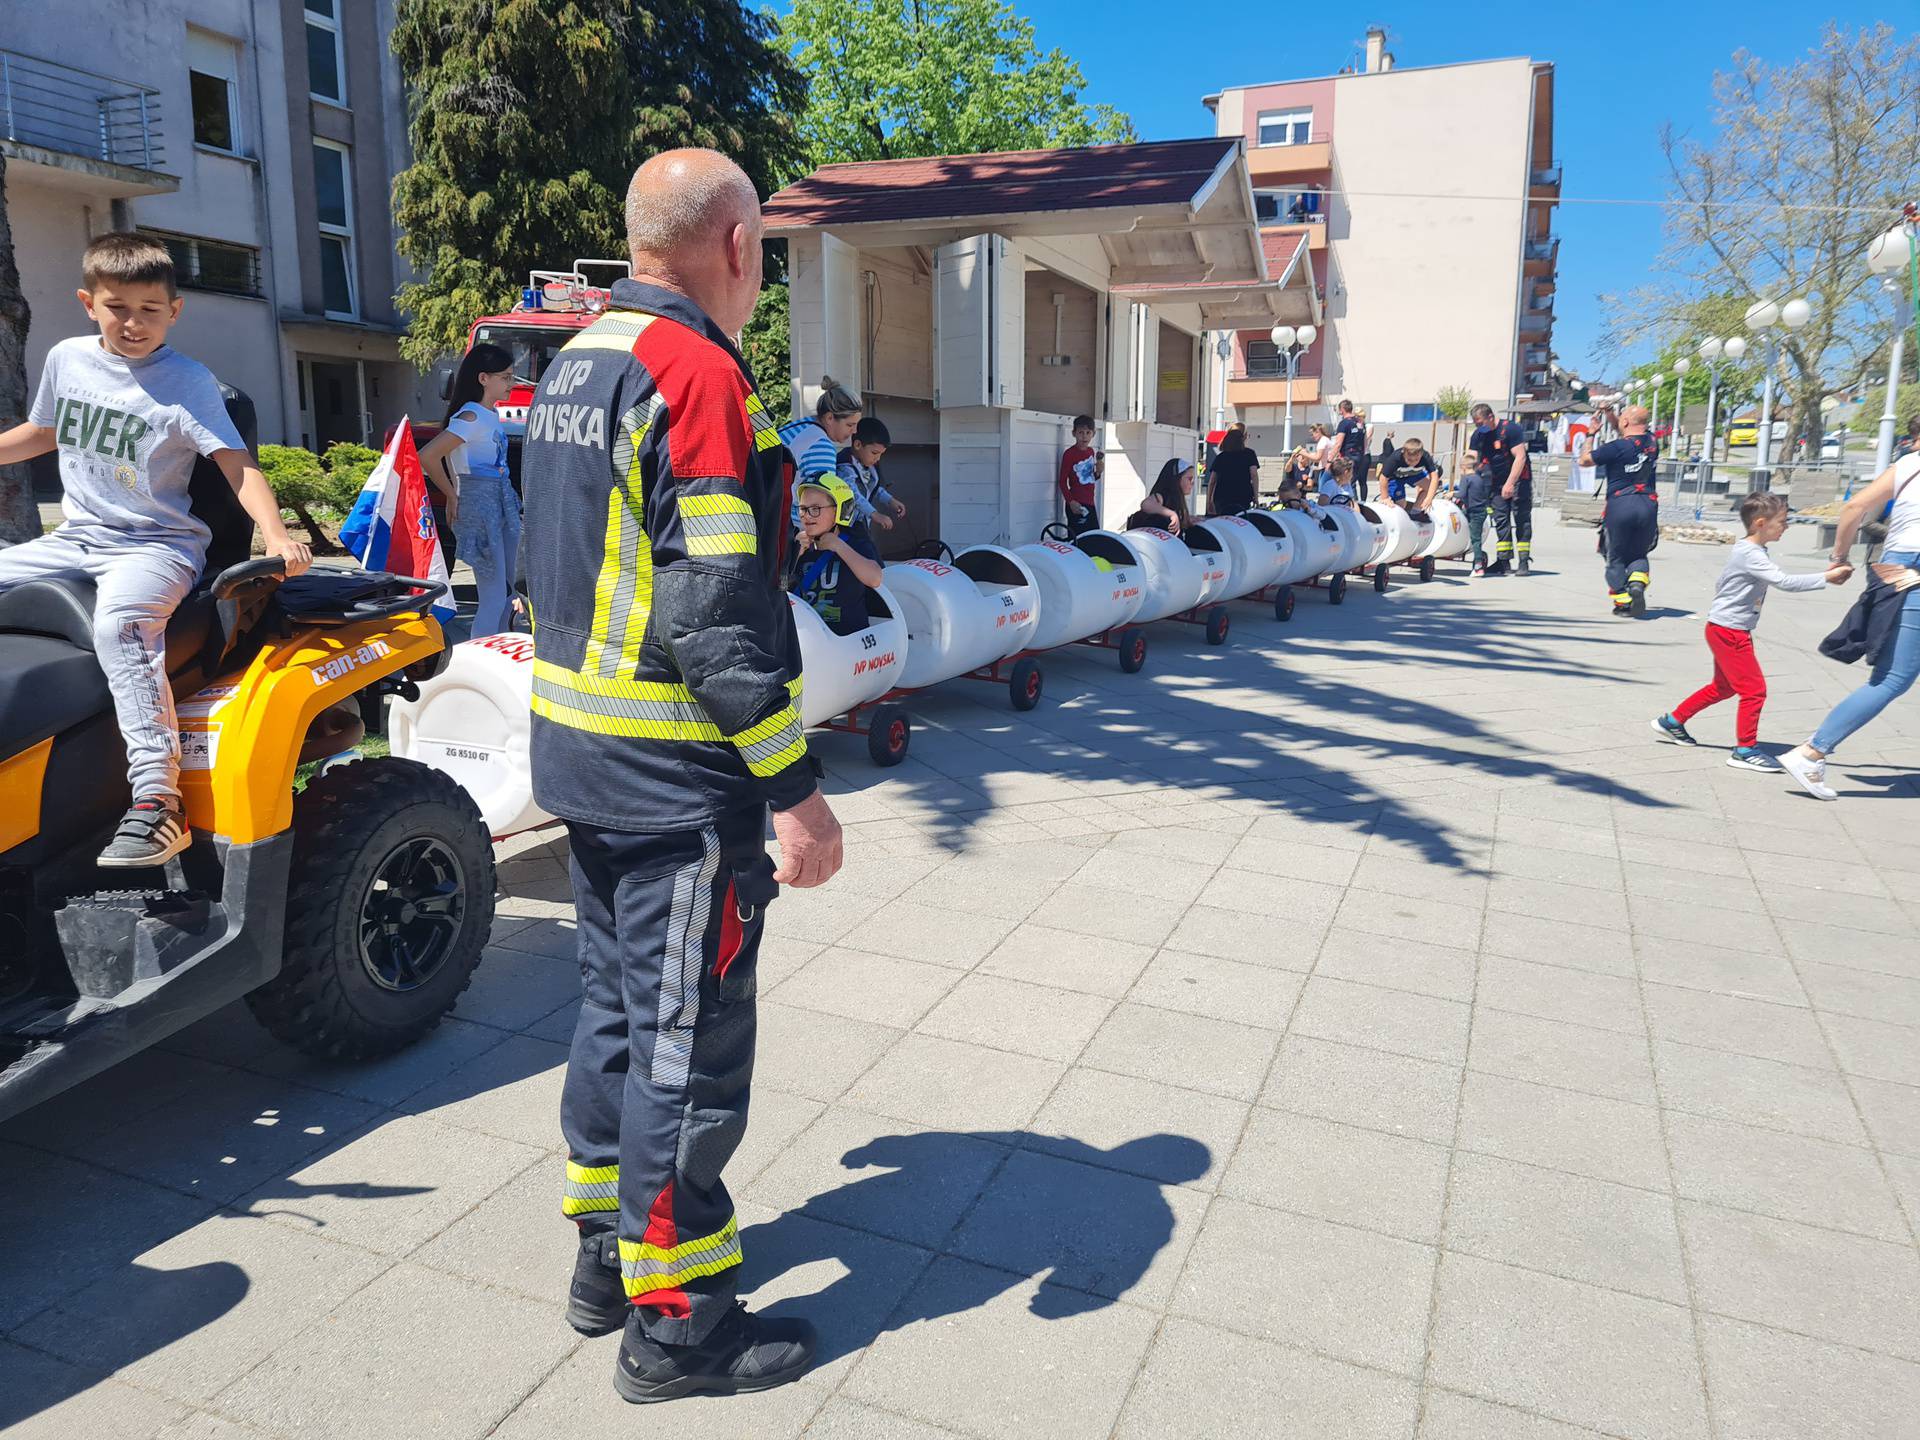 Vatrogasci iz Novske: 'Vlakić je pun pogodak, djeca svih uzrasta su sretna, u vožnji uživaju svi'